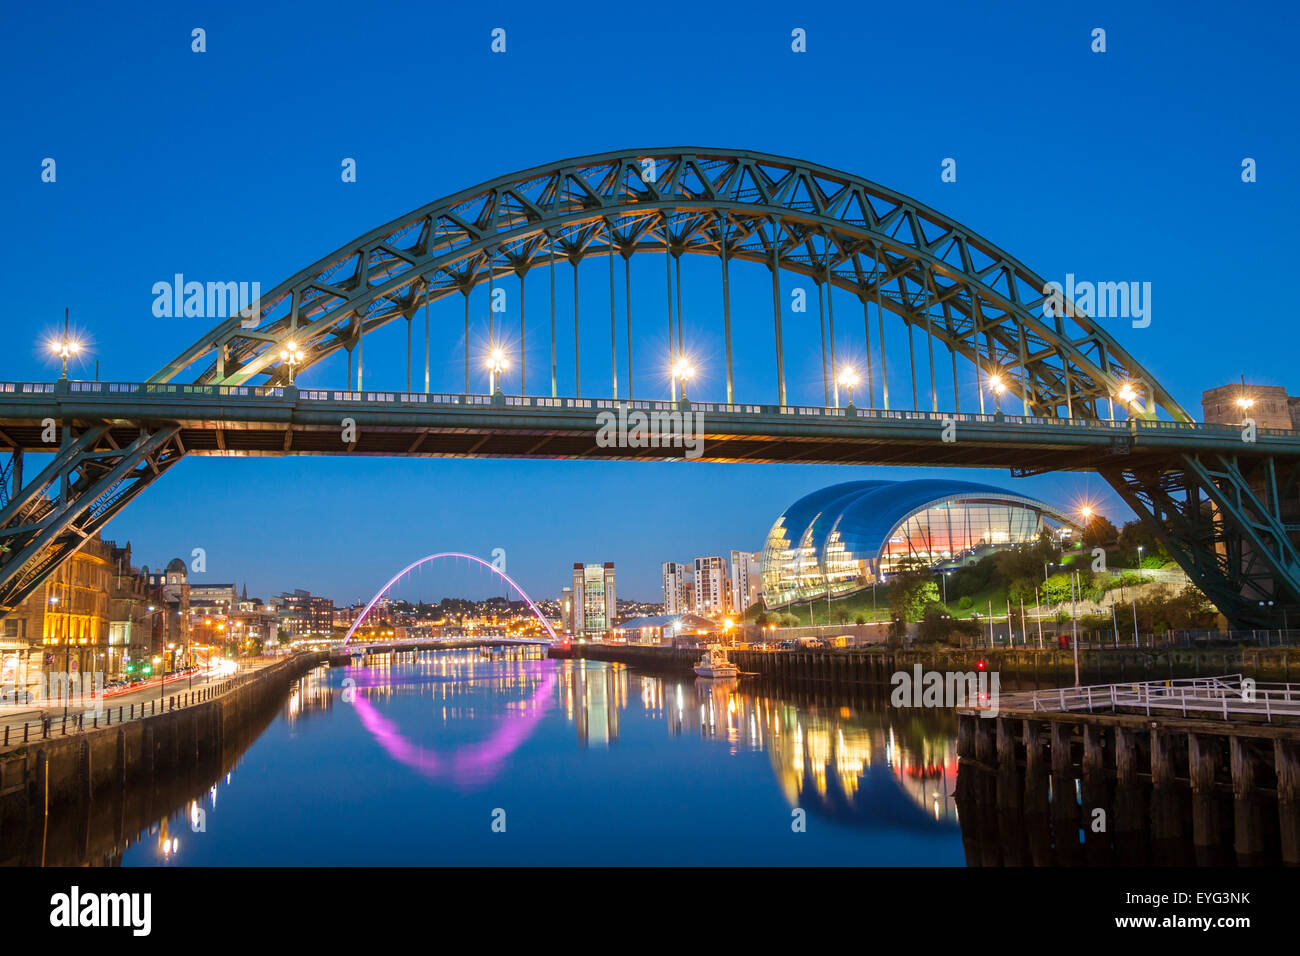 Newcastle Quayside and Tyne bridge at dusk. Newcastle upon Tyne, England. UK Stock Photo